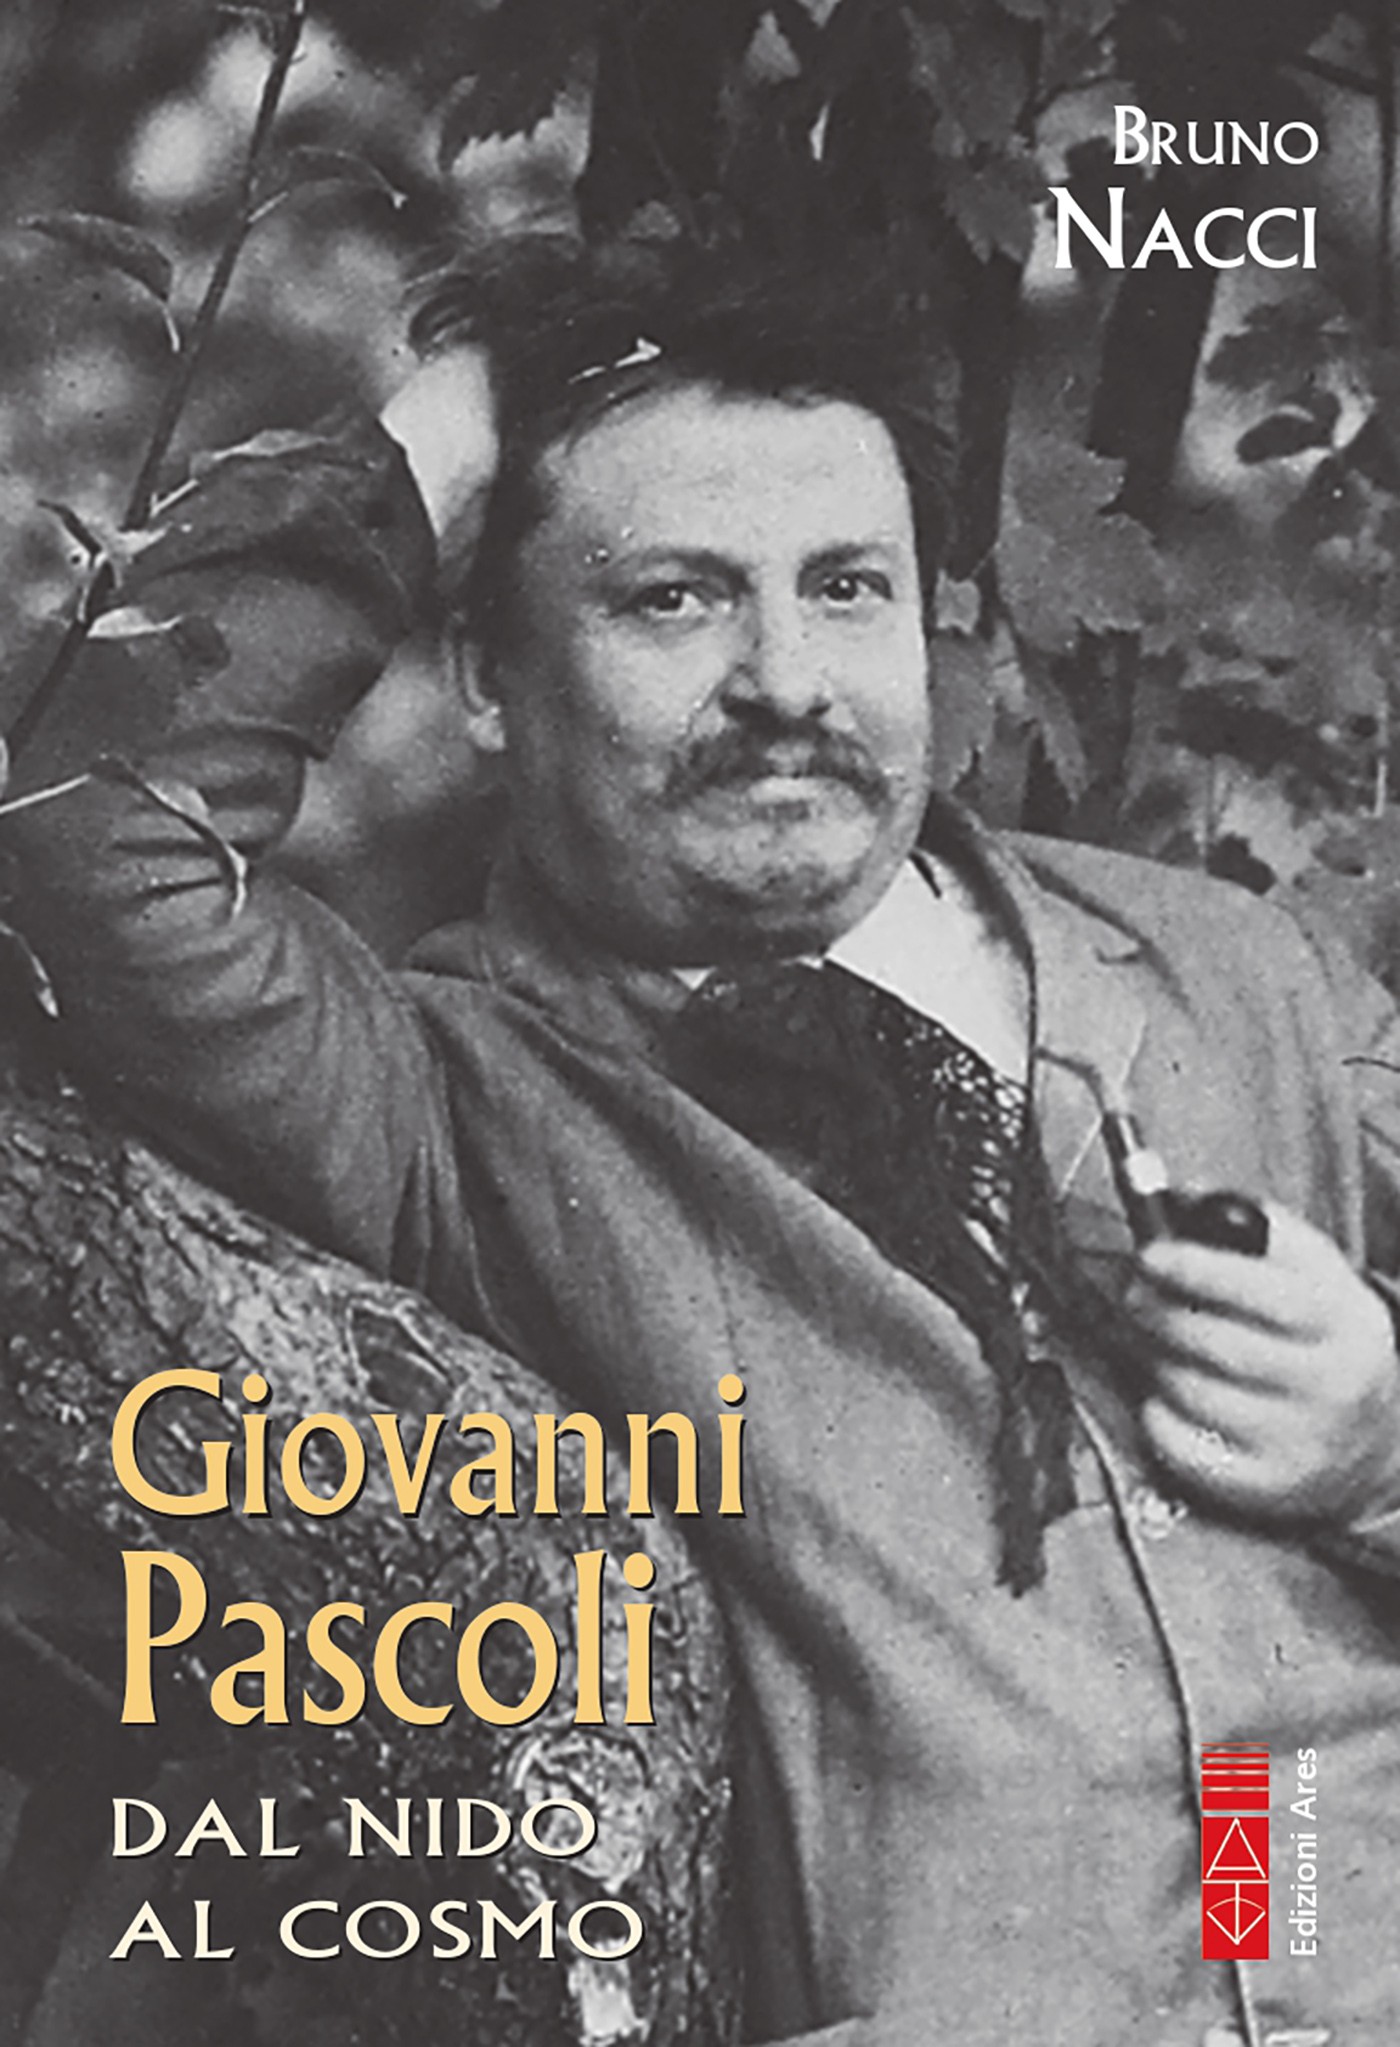 Giovanni Pascoli - Librerie.coop